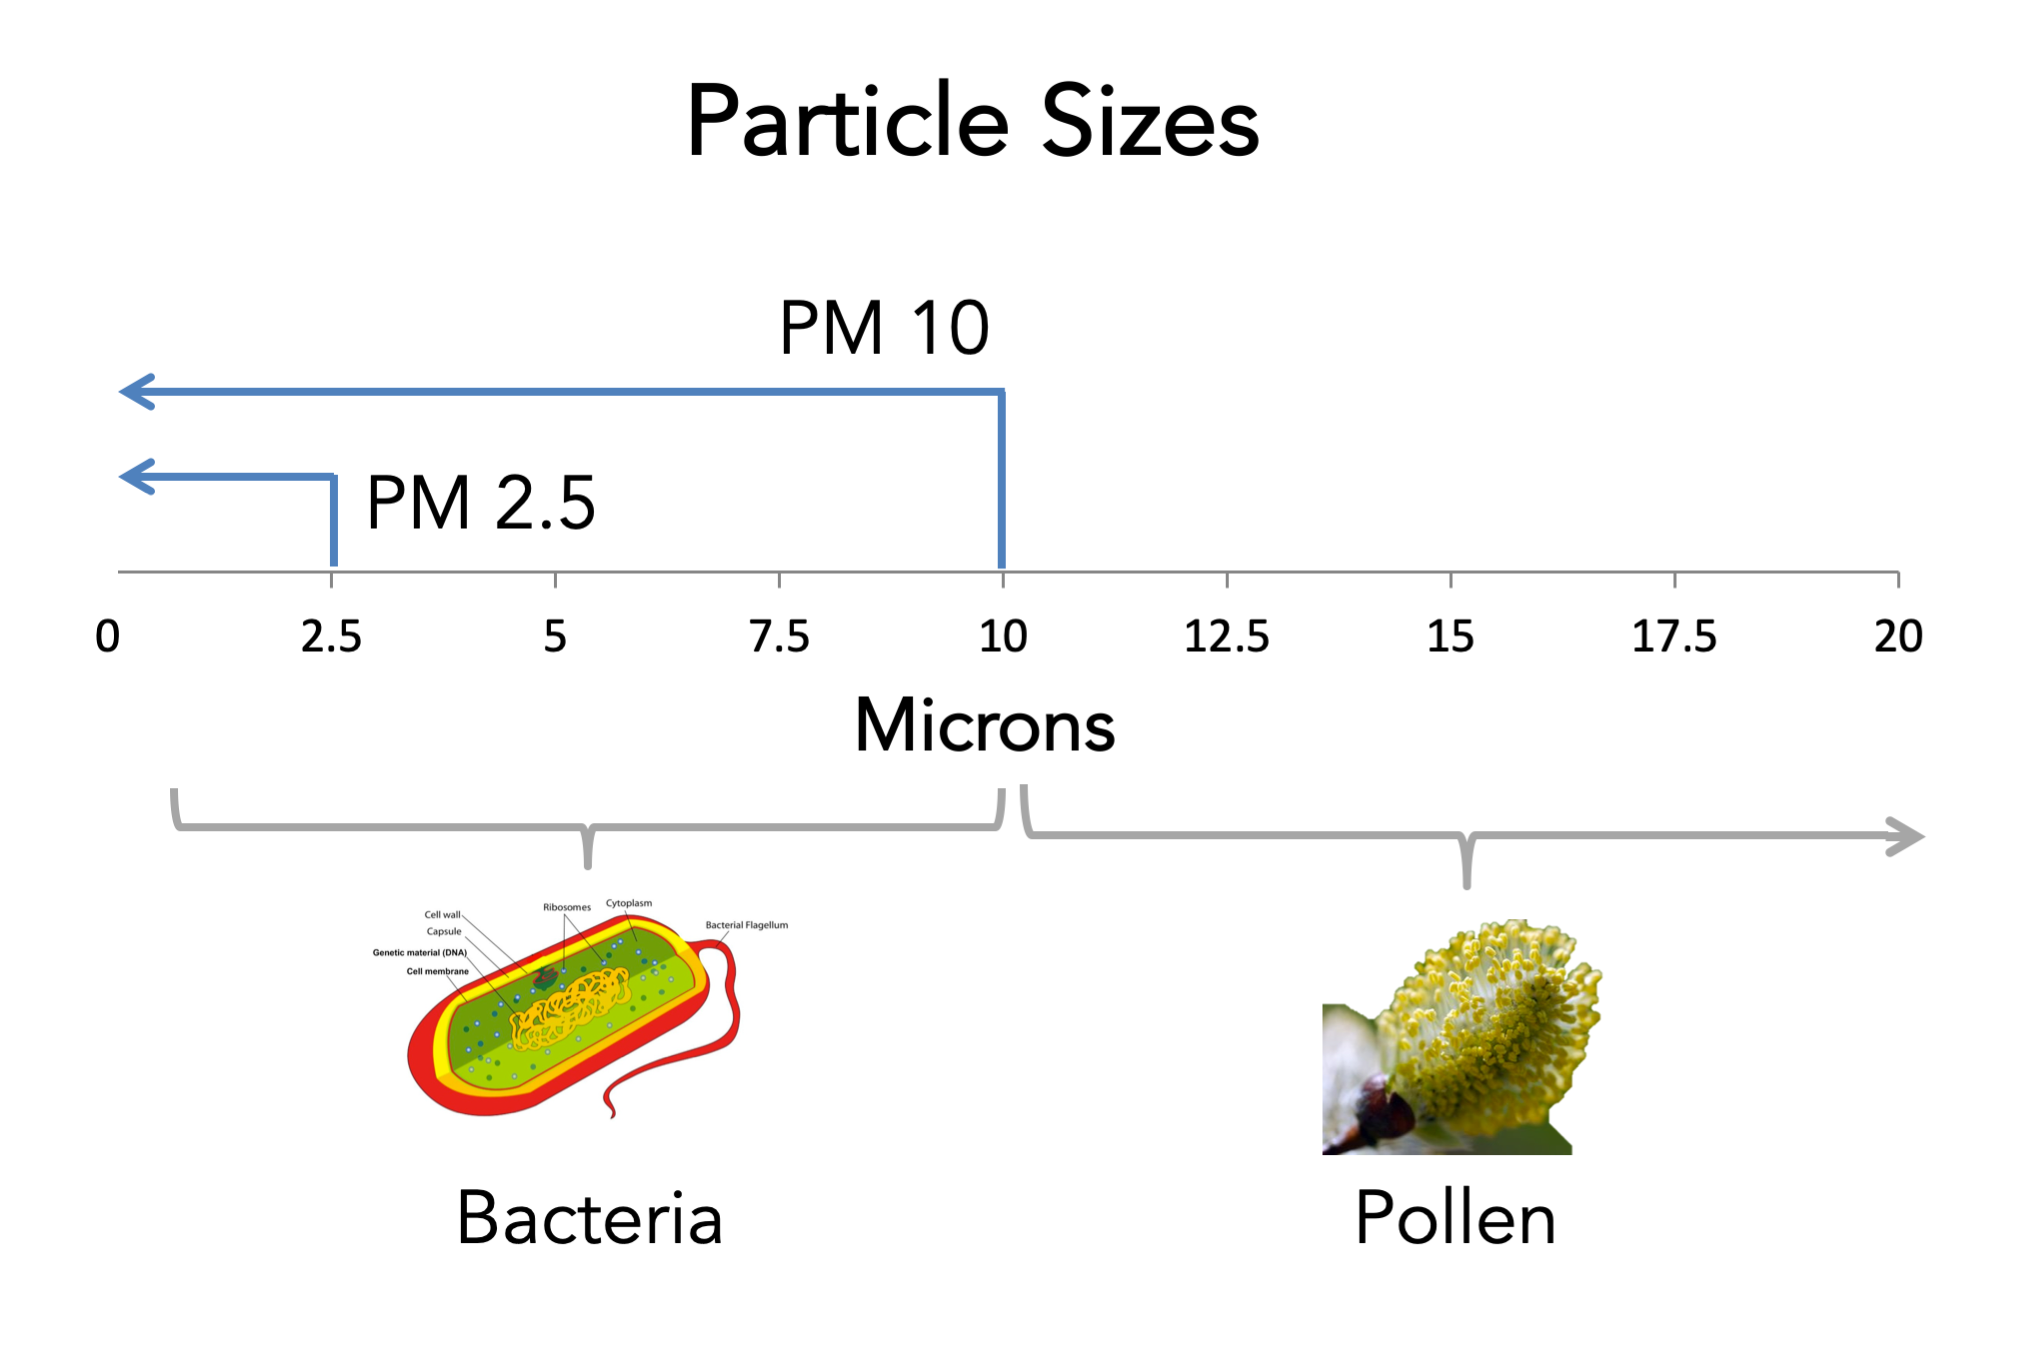 Particle-Sizes-PM10-vs-PM2.5-EN